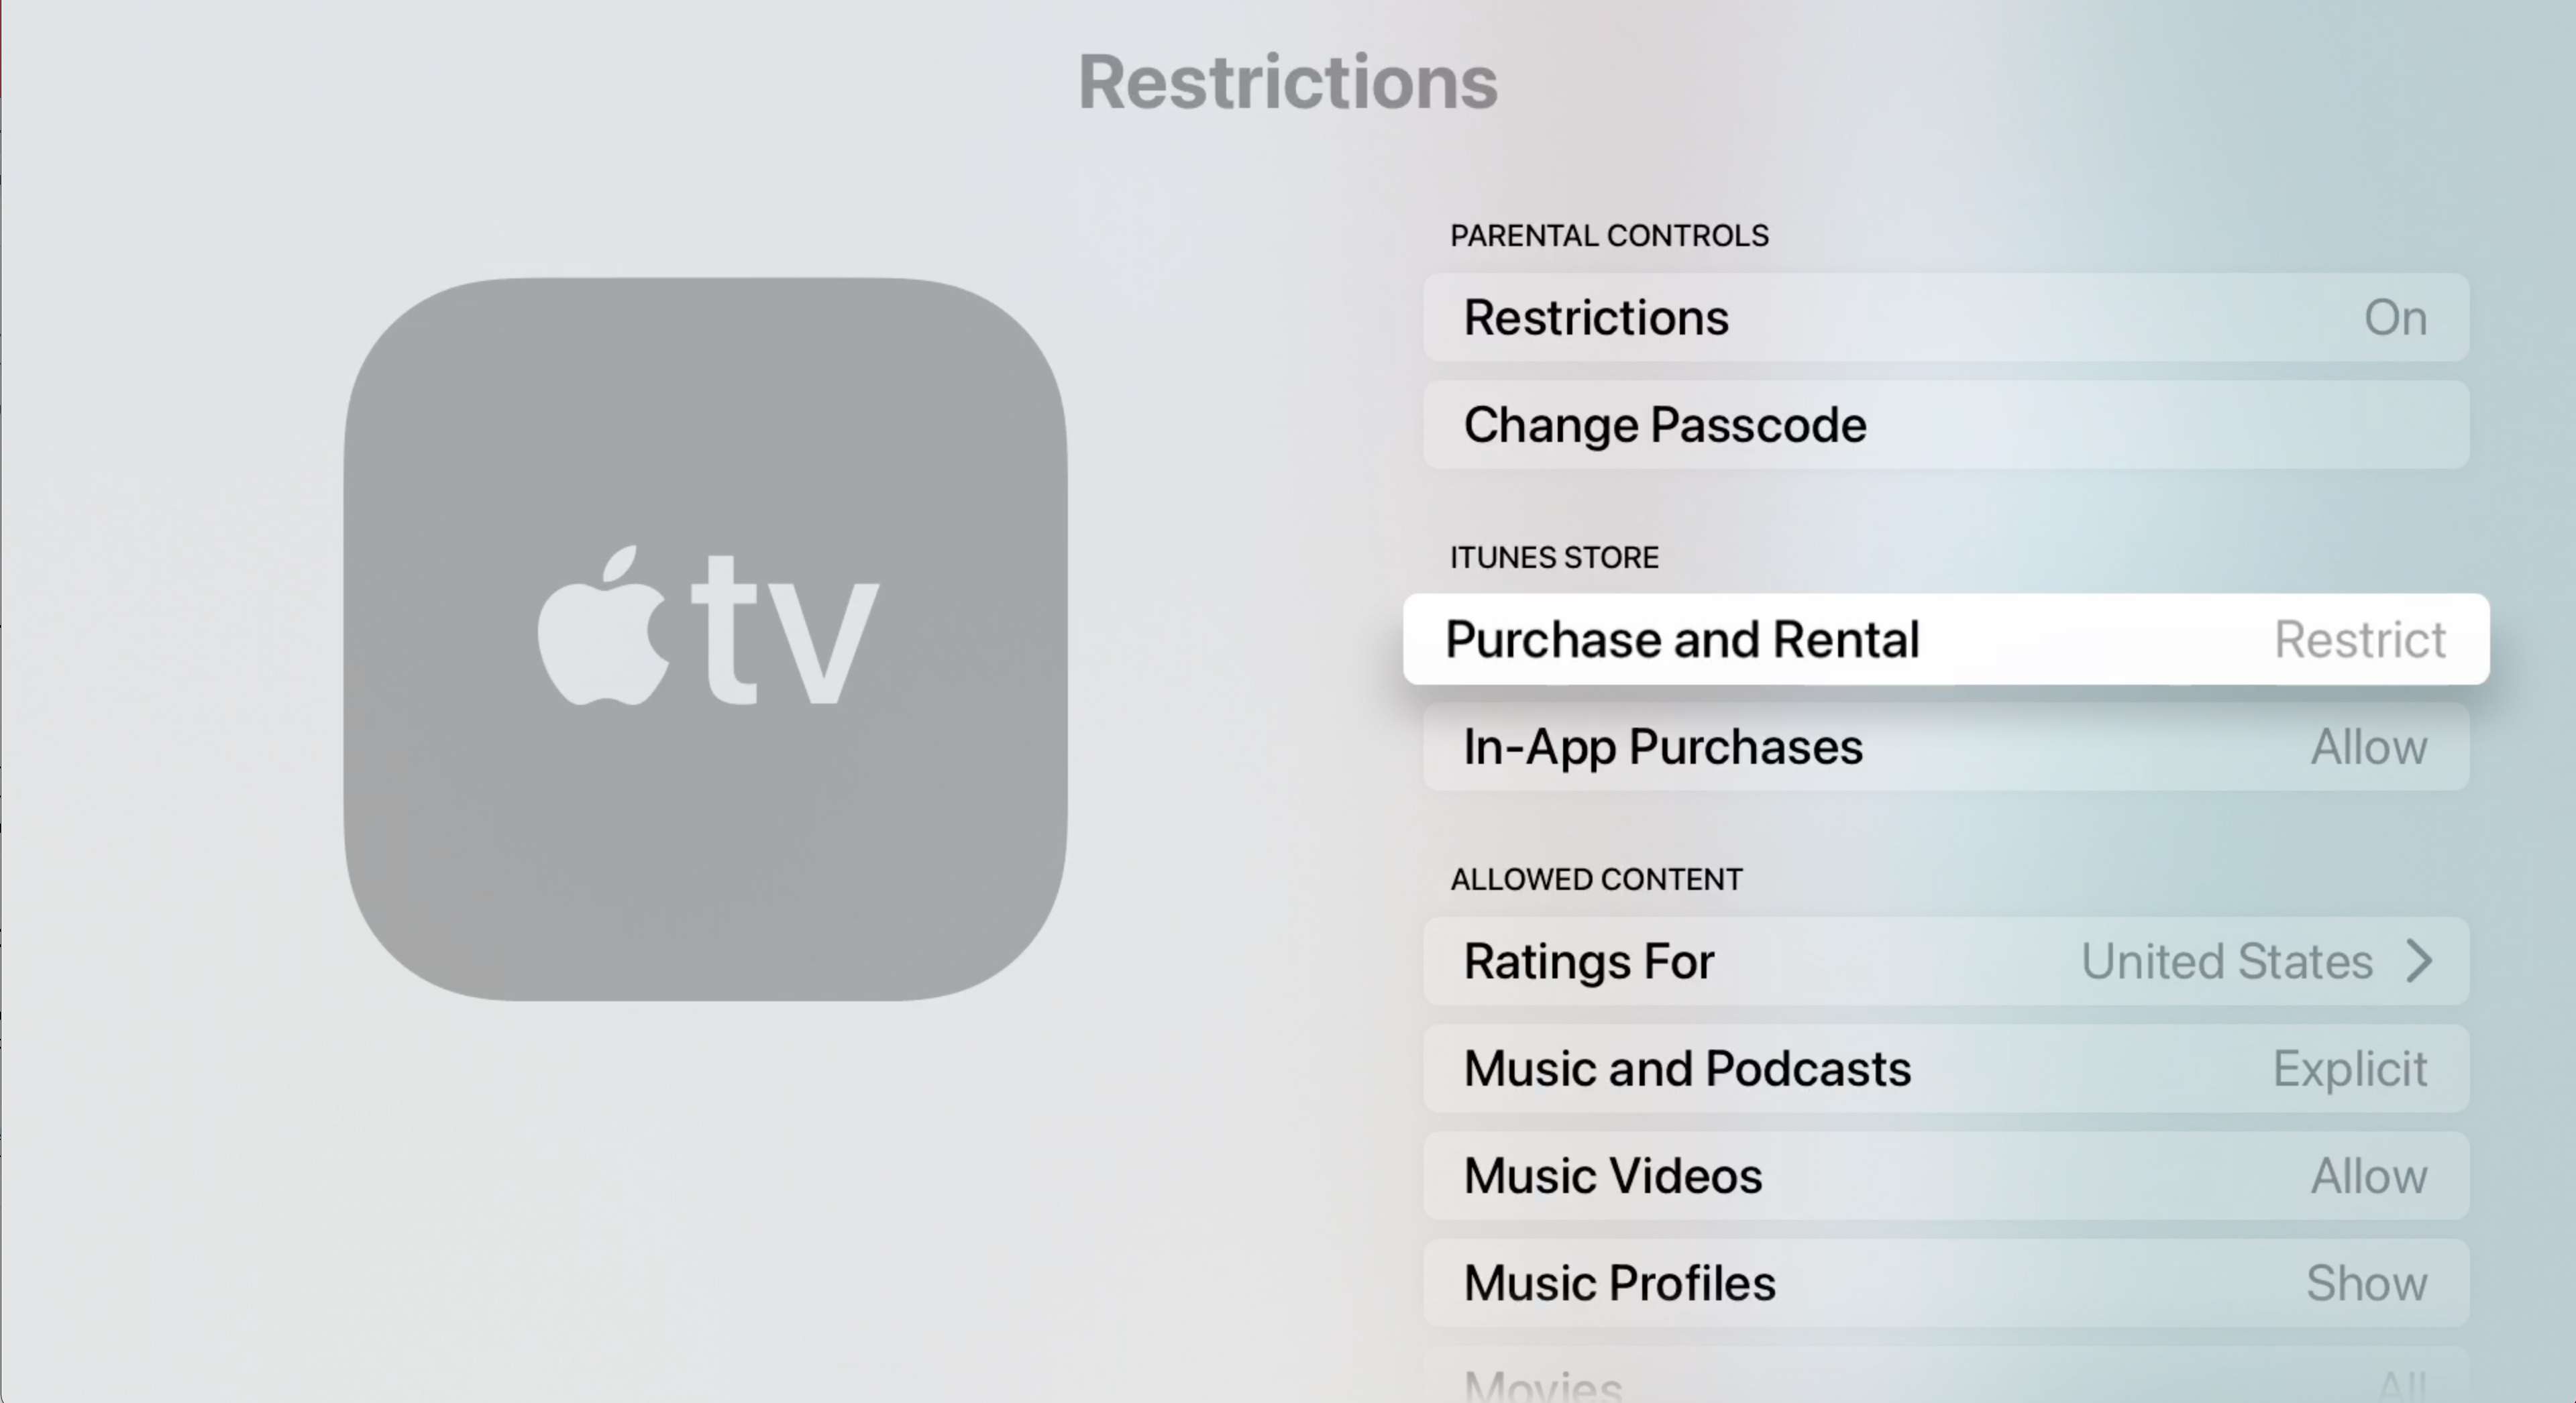 Configurações de restrições da Apple TV com Restrição de compra e aluguel realçada